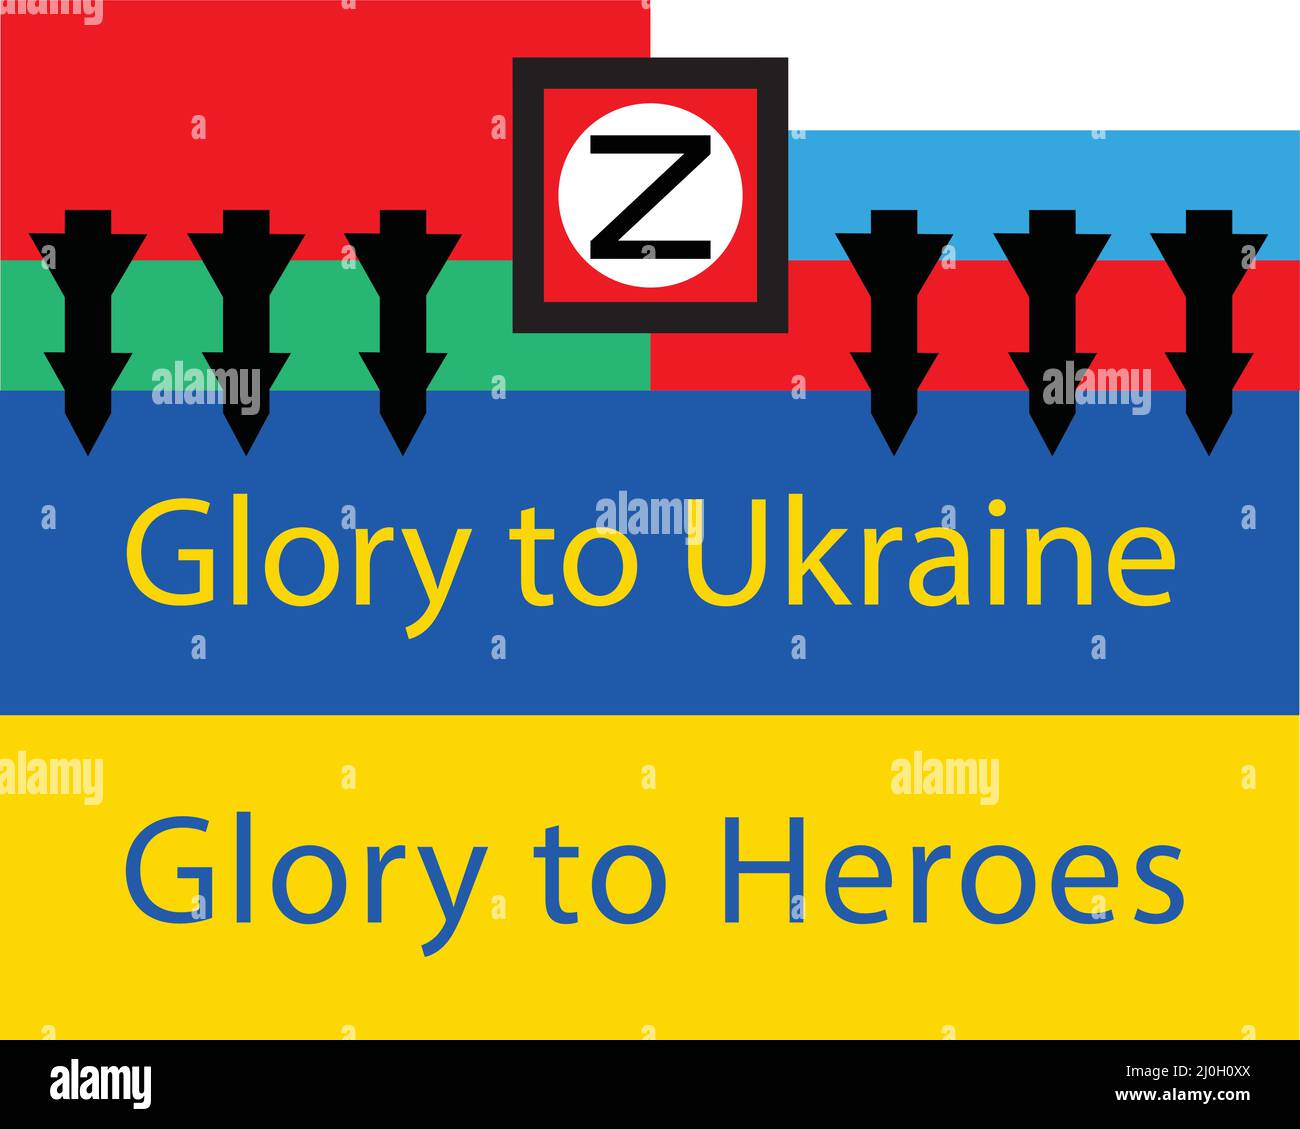 Aggression Russlands und Weißrussland gegen die Ukraine Inschrift auf der gelb-blauen Flagge Ruhm der Ukraine Ruhm der Helden. Abbildung. Stock Vektor